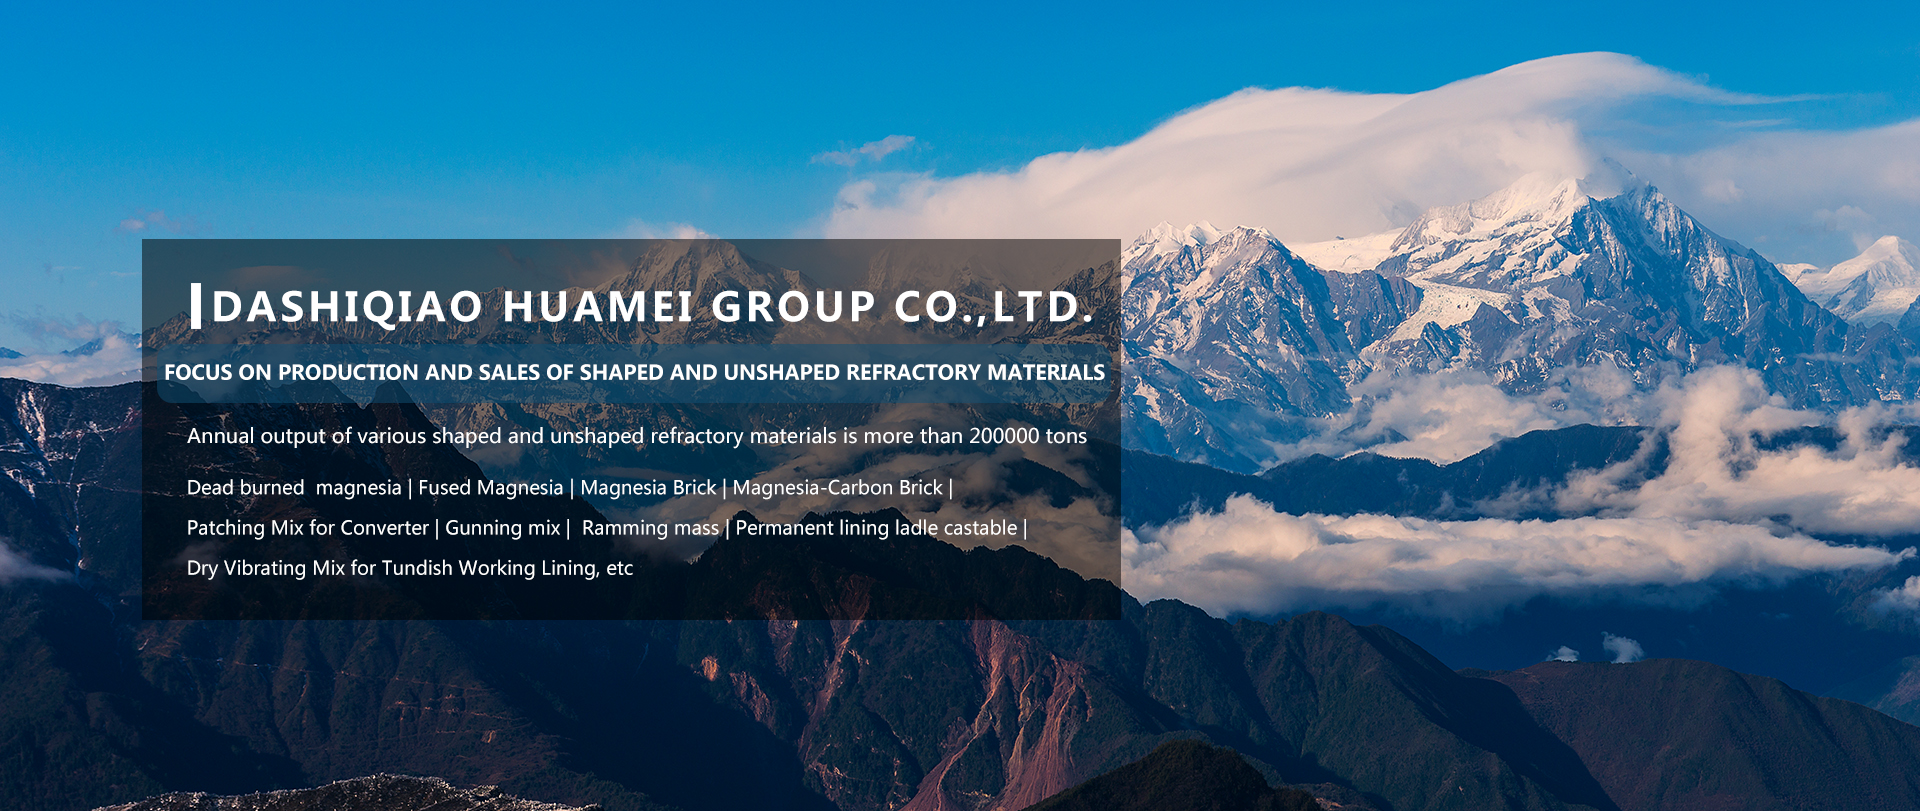 Dashiqiao Huamei Group Co., Ltd